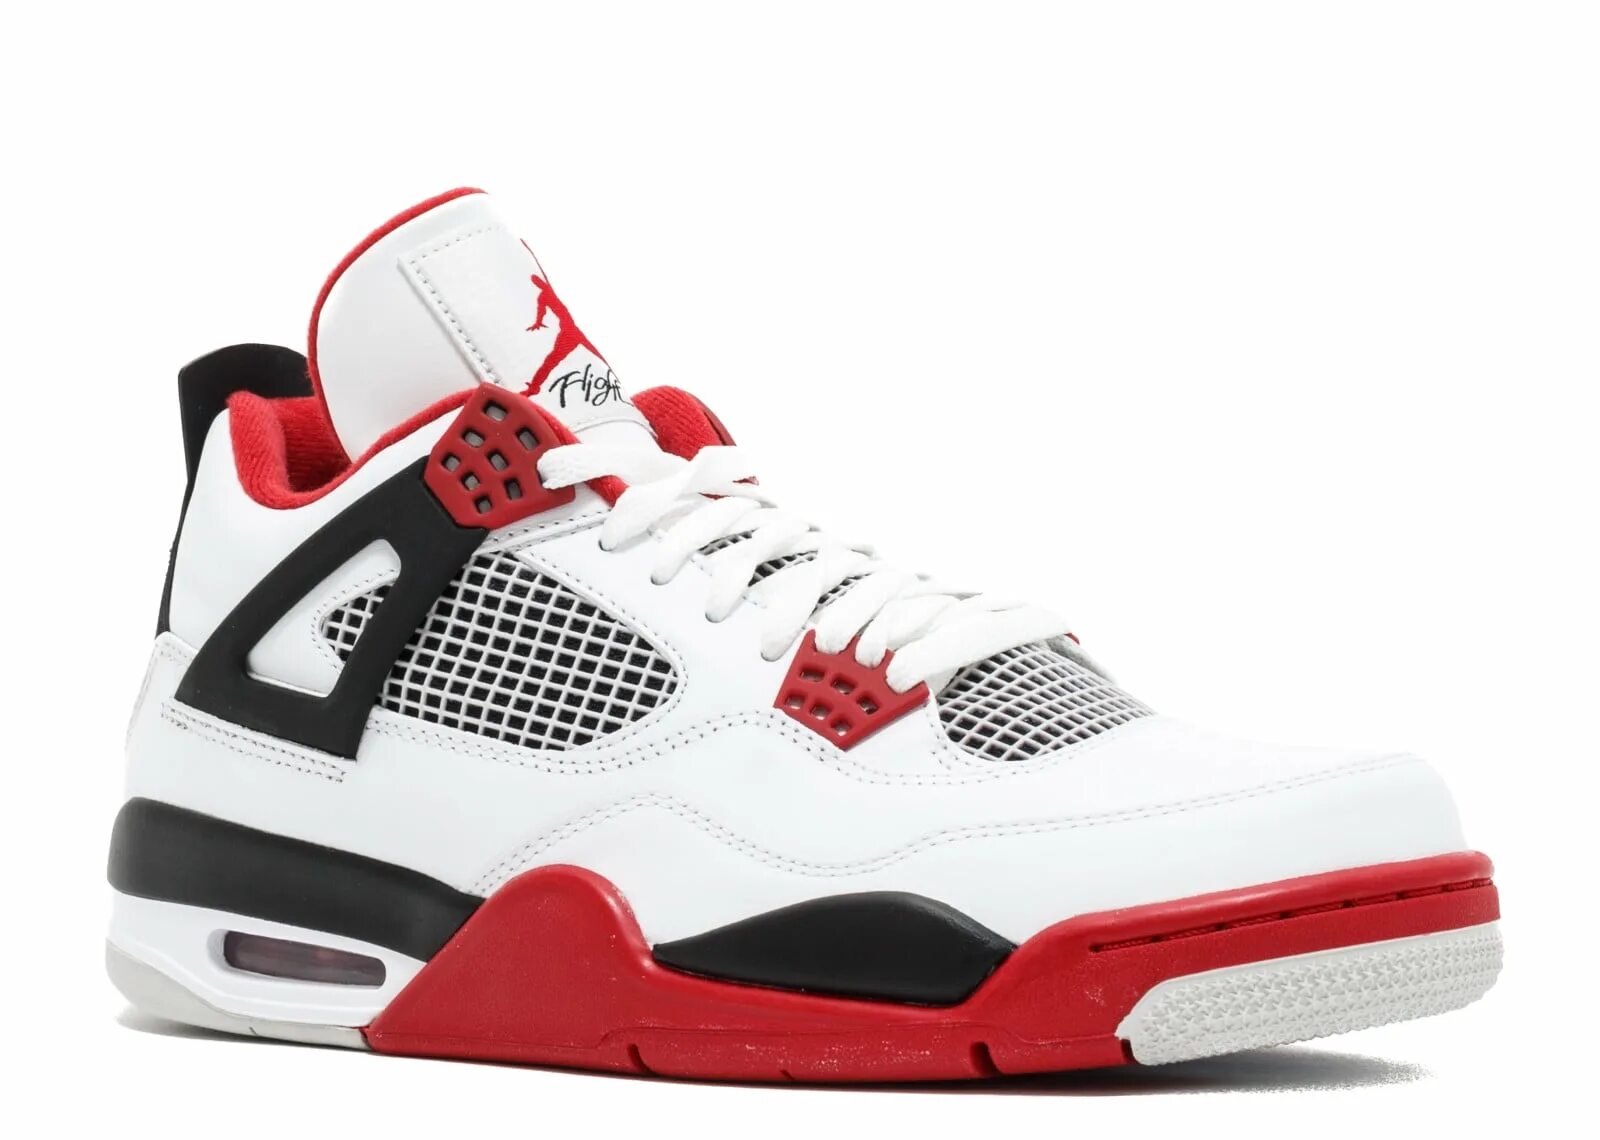 Nike jordan 4 red. Nike Air Jordan 4 Fire Red. Air Jordan 4 Retro Fire Red. Air Jordan 4 Retro White. Nike Jordan 4 Retro red4.